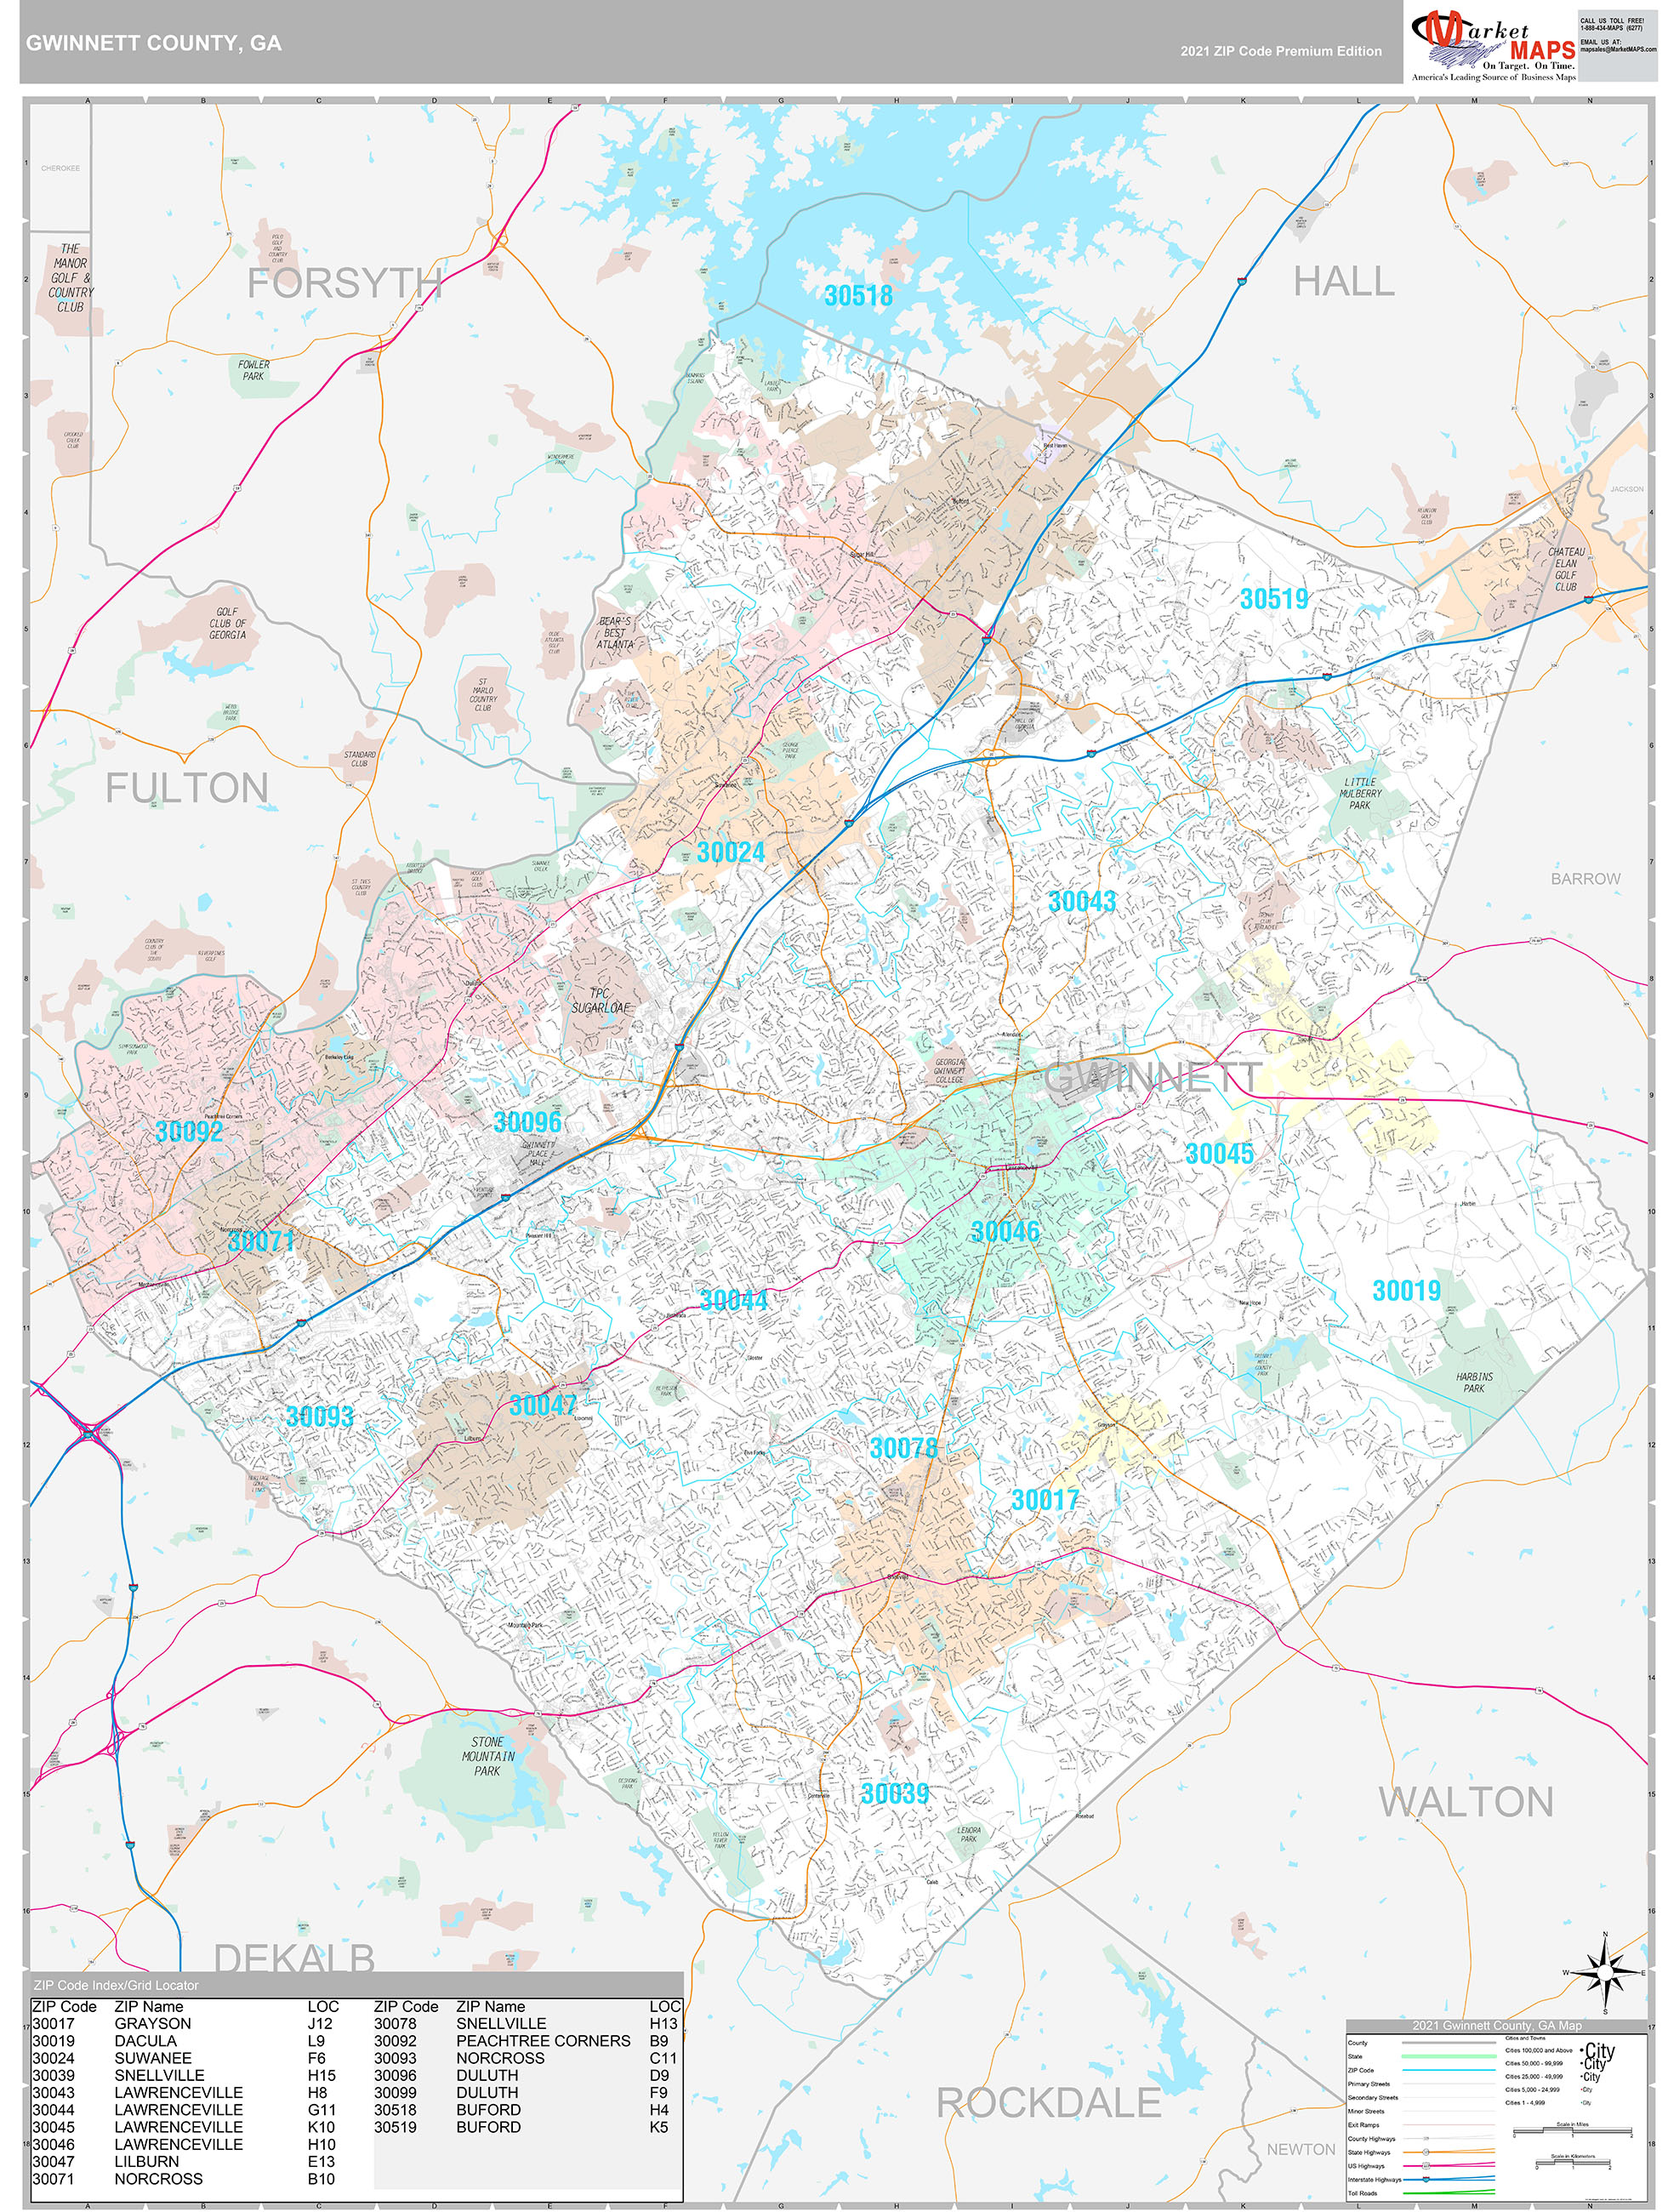 Gwinnett County, GA Wall Map Premium Style by MarketMAPS - MapSales